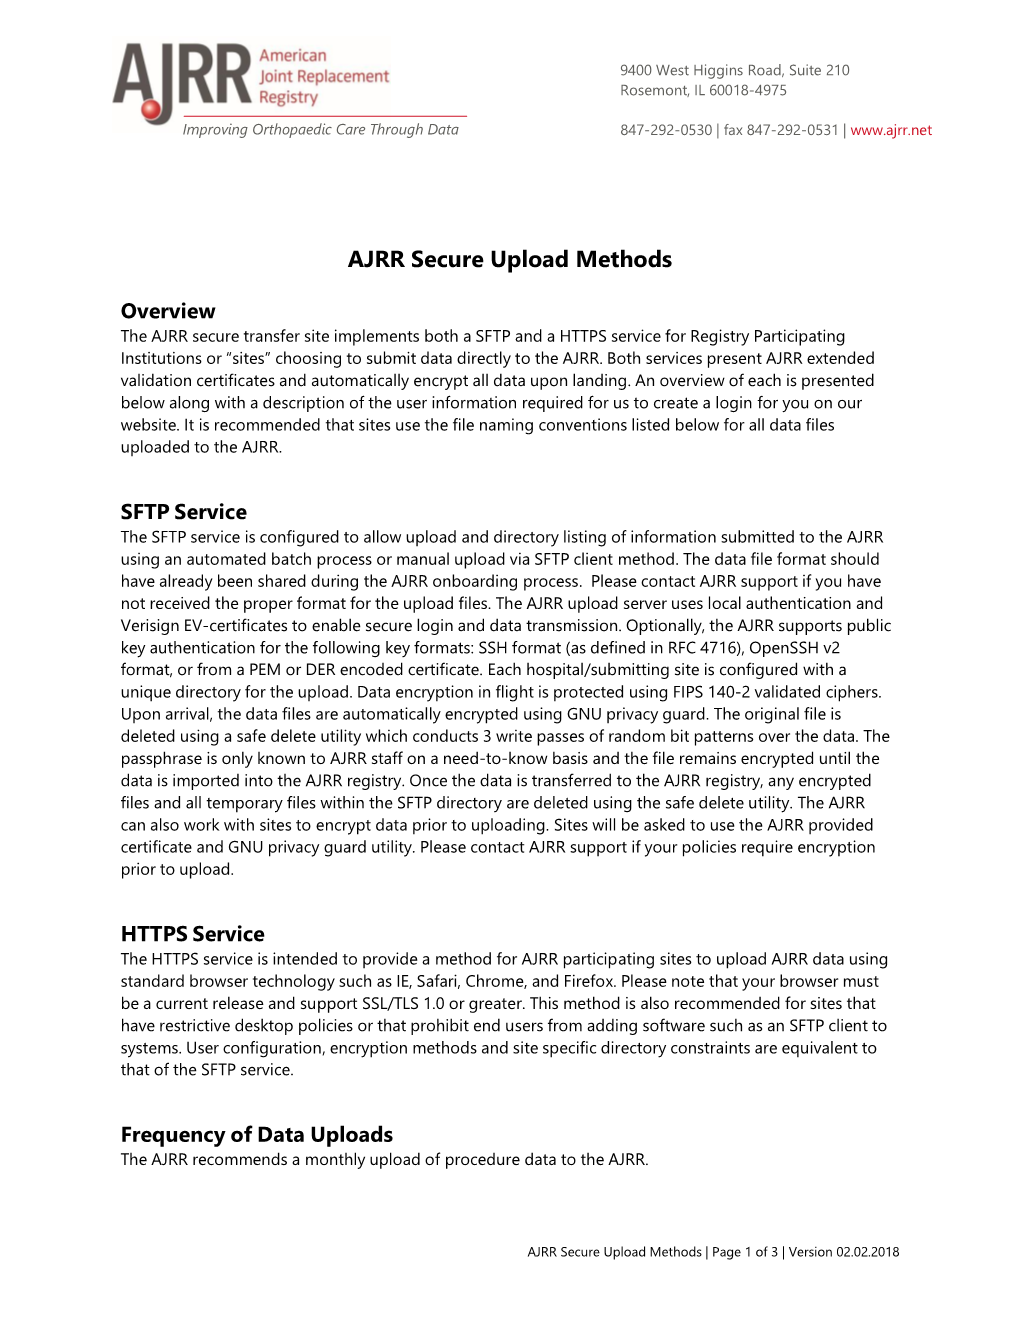 AJRR Secure Upload Methods